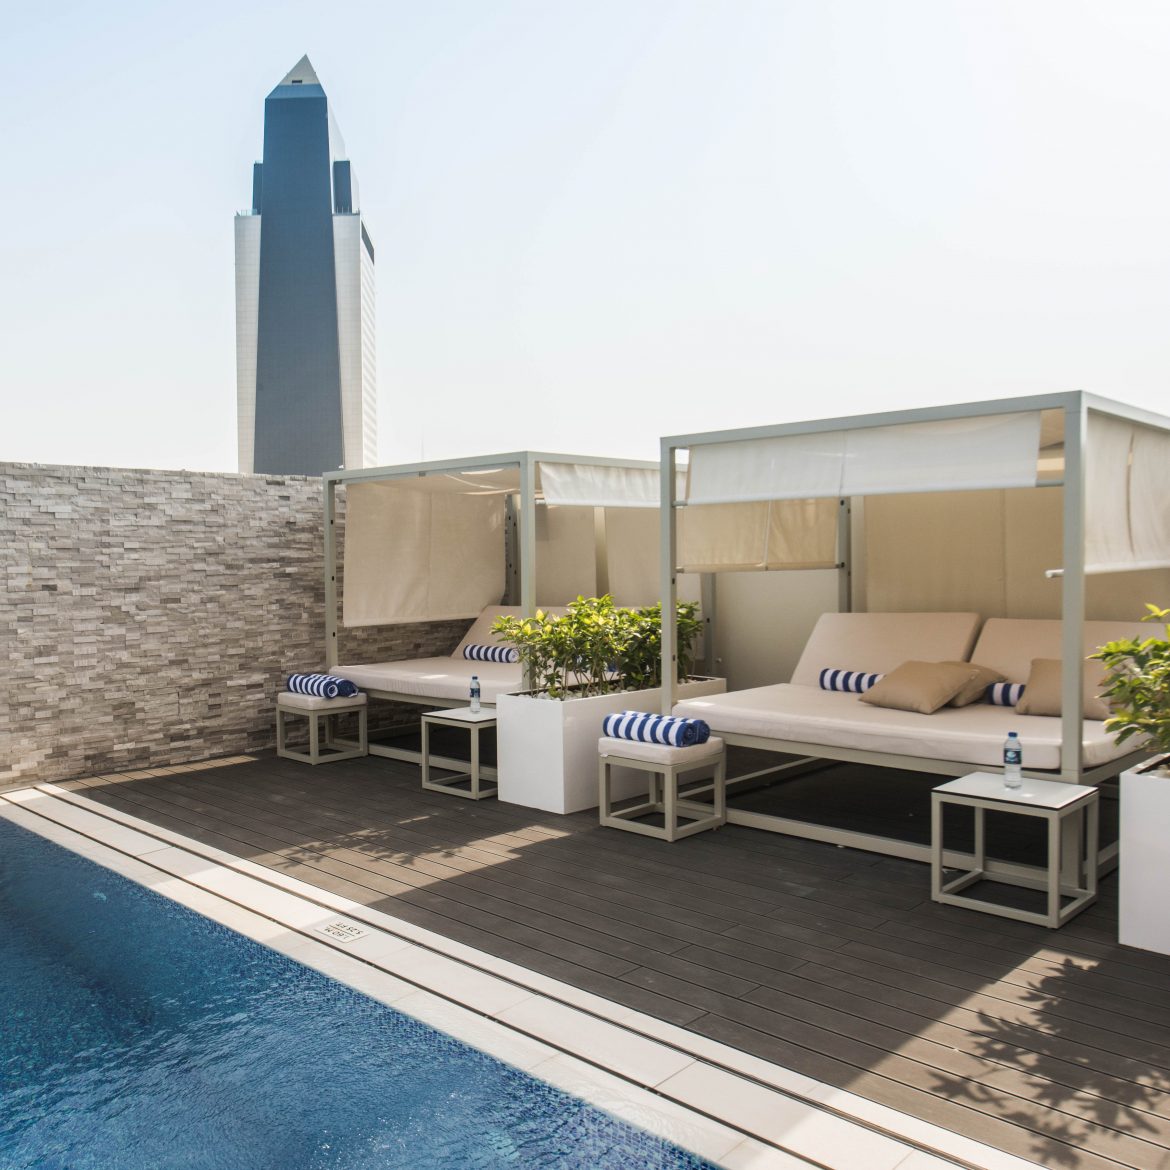 فندق نوفوتيل بر دبي يفتتح أبوابه في إمارة دبي 